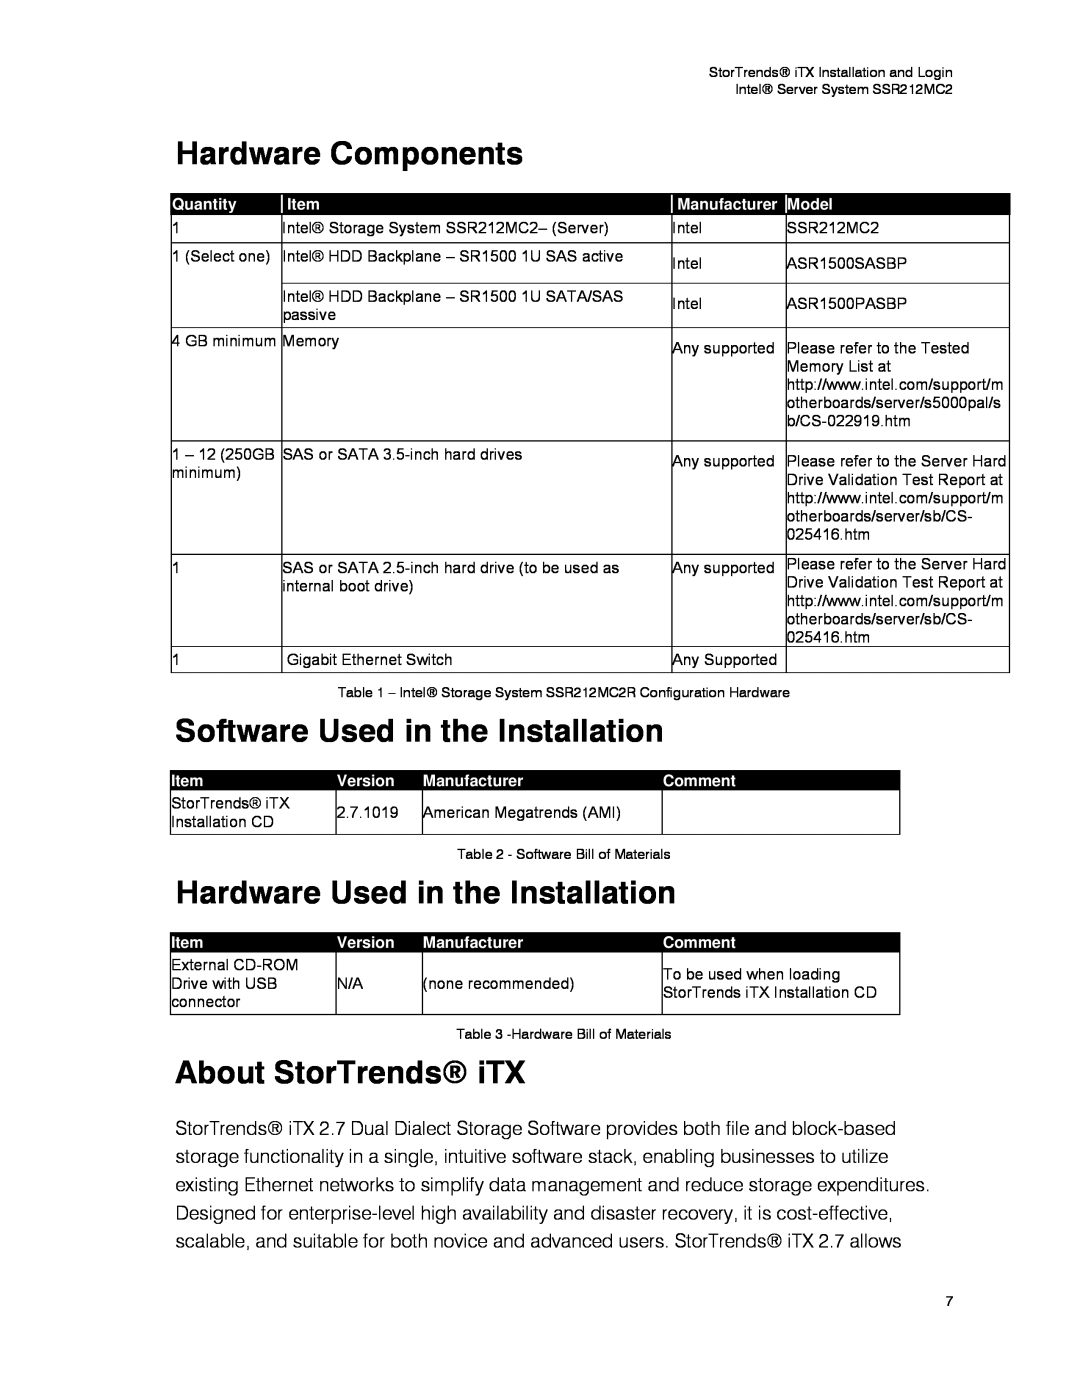 Intel SSR212MC2 manual Hardware Components, Software Used in the Installation, Hardware Used in the Installation, Quantity 